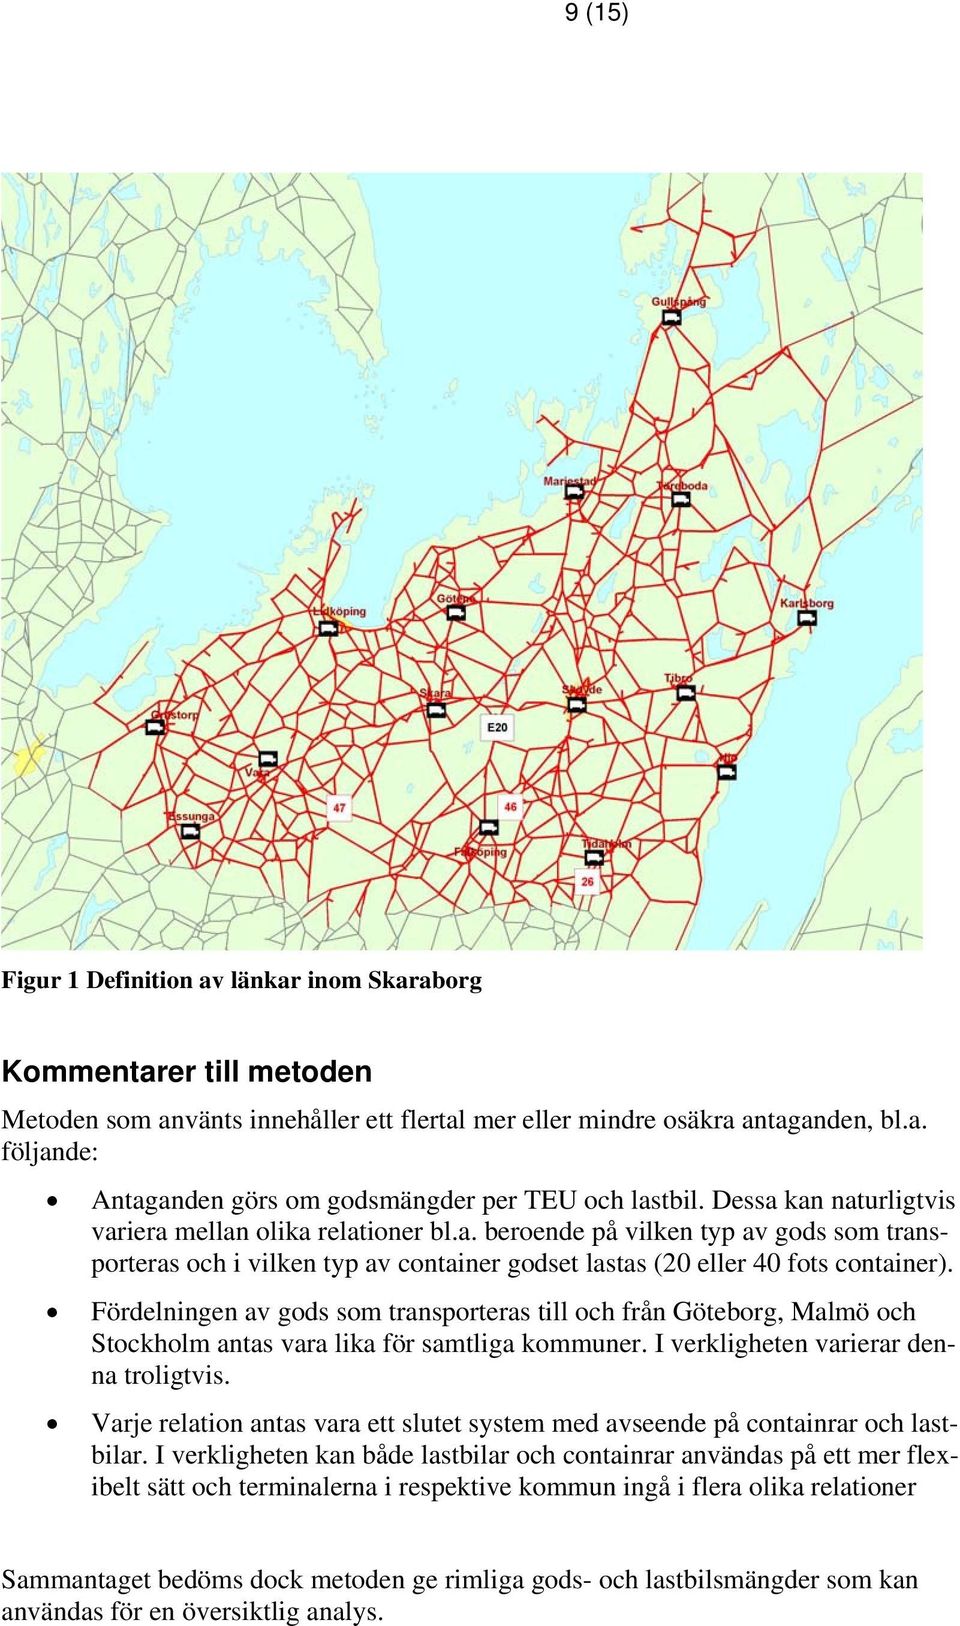 Fördelningen av gods som transporteras till och från Göteborg, Malmö och Stockholm antas vara lika för samtliga kommuner. I verkligheten varierar denna troligtvis.